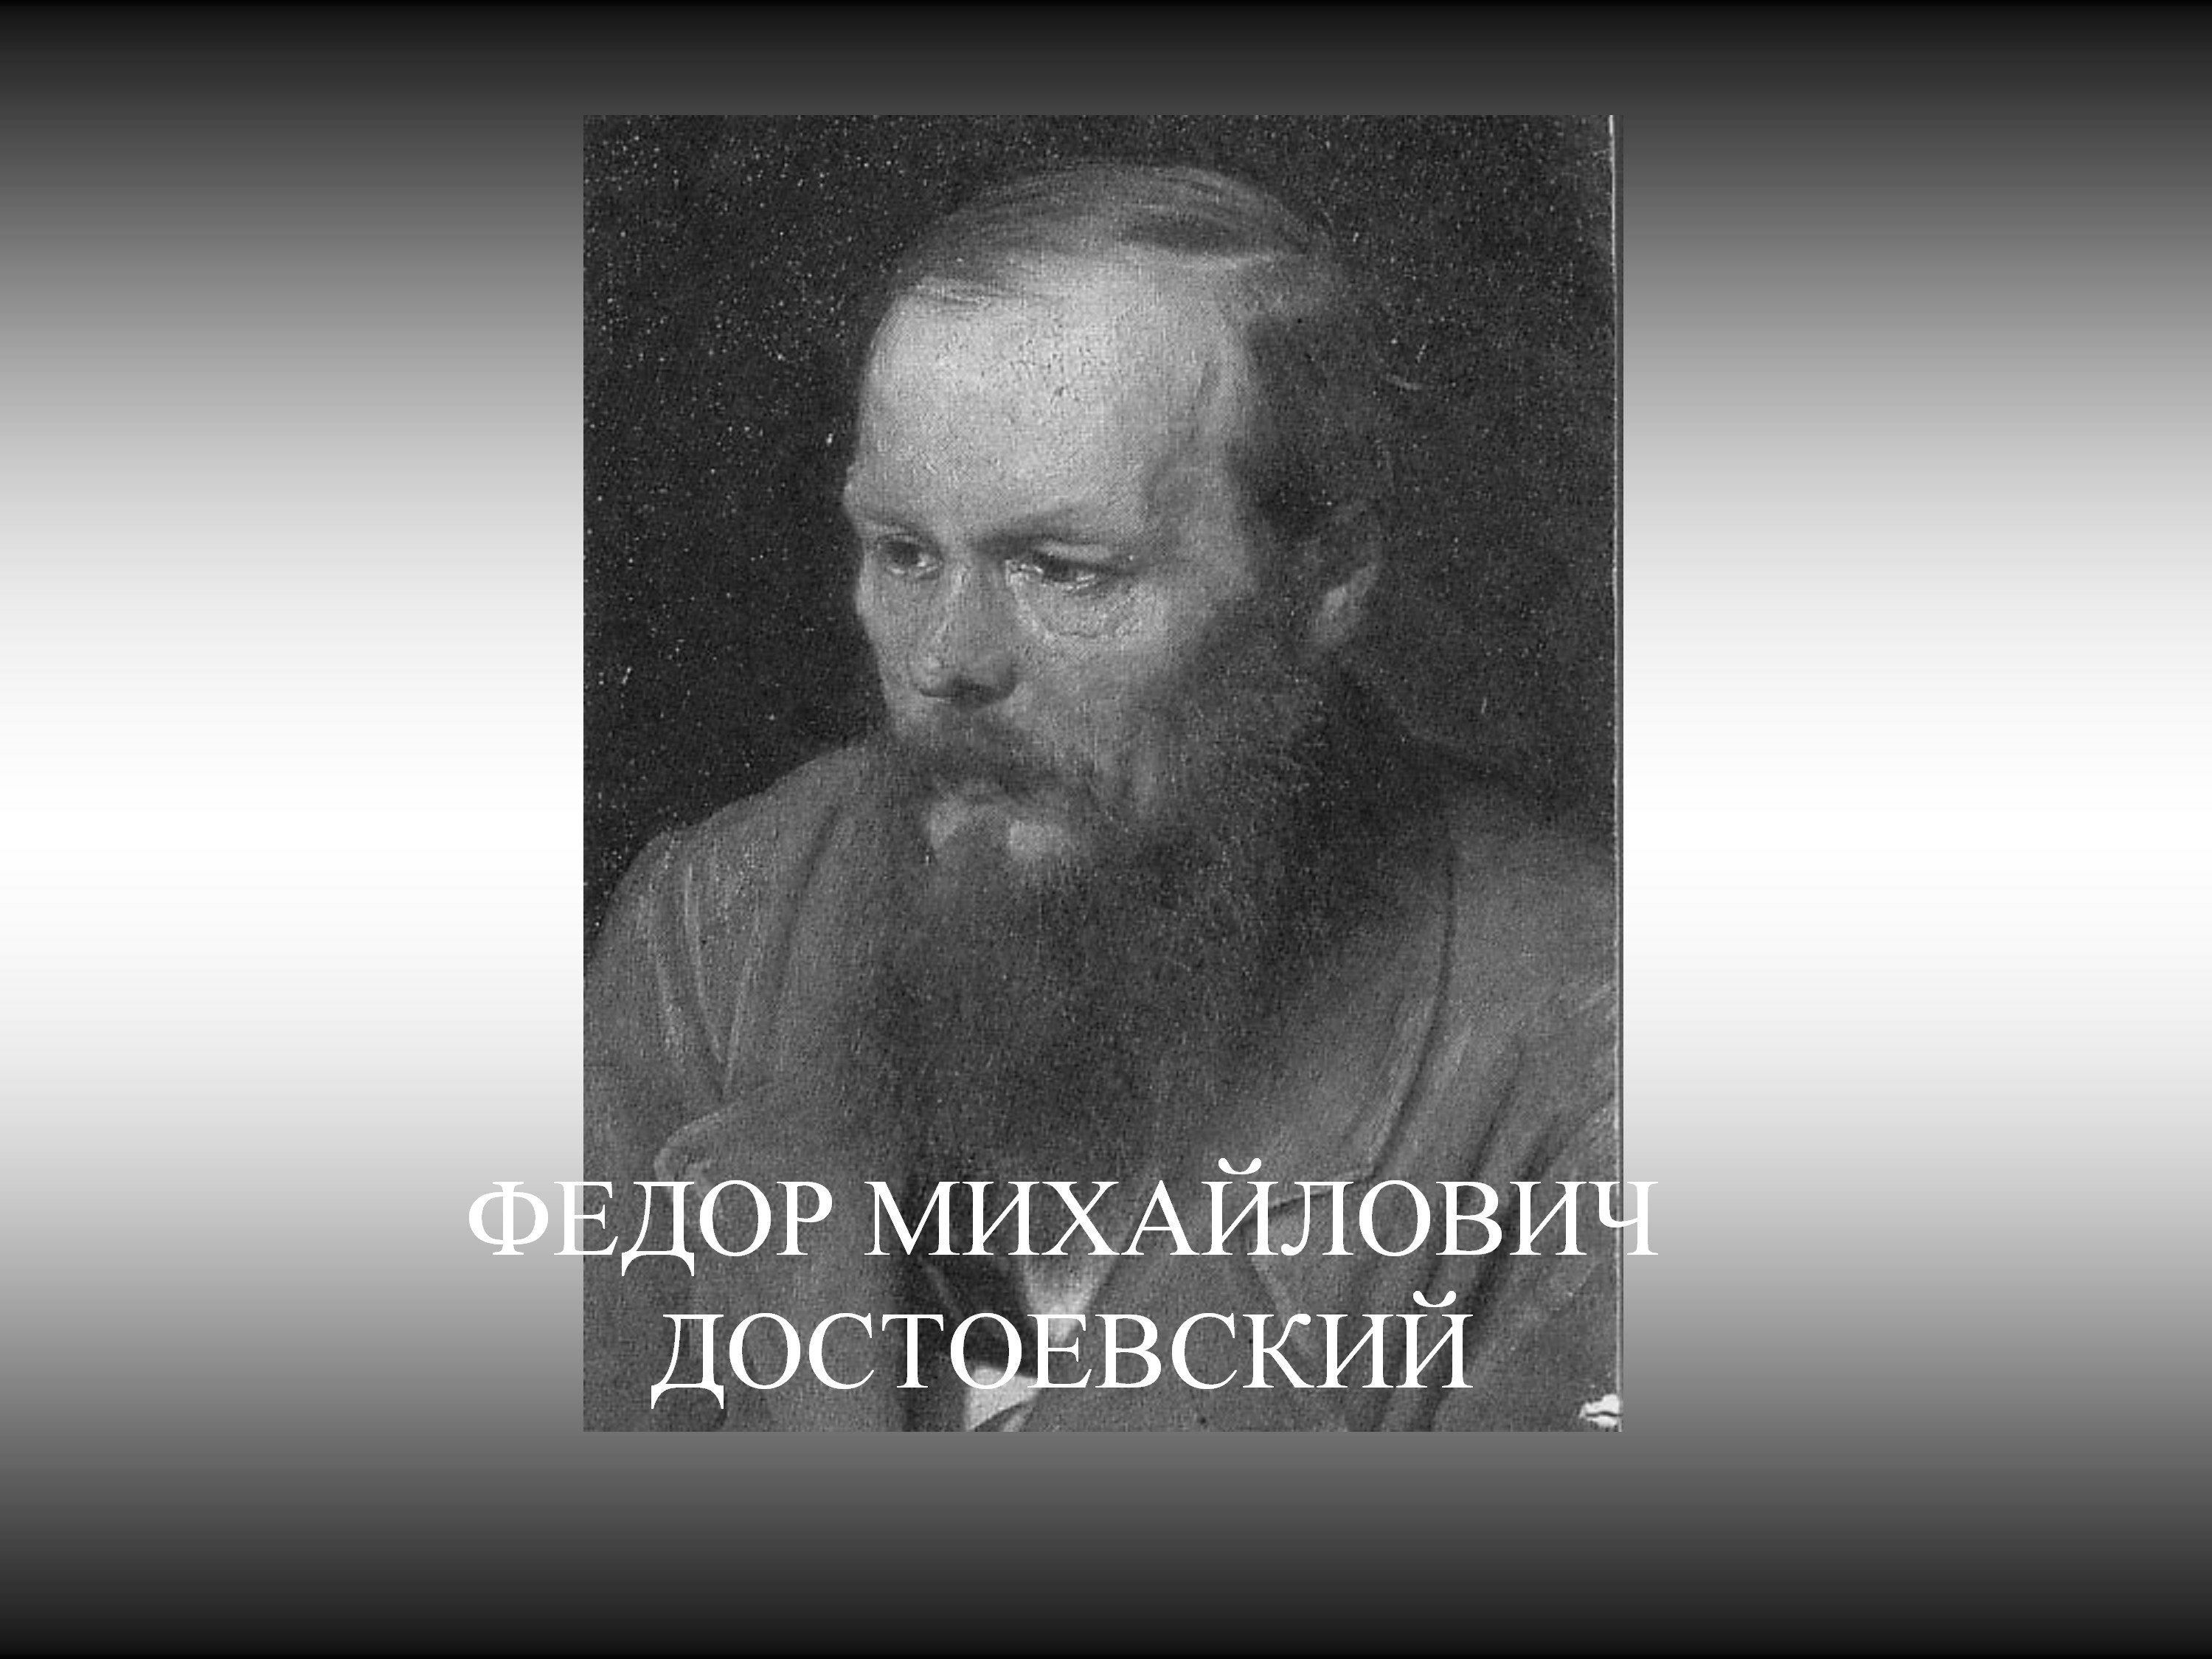 Федор Михайлович Достоевский образование